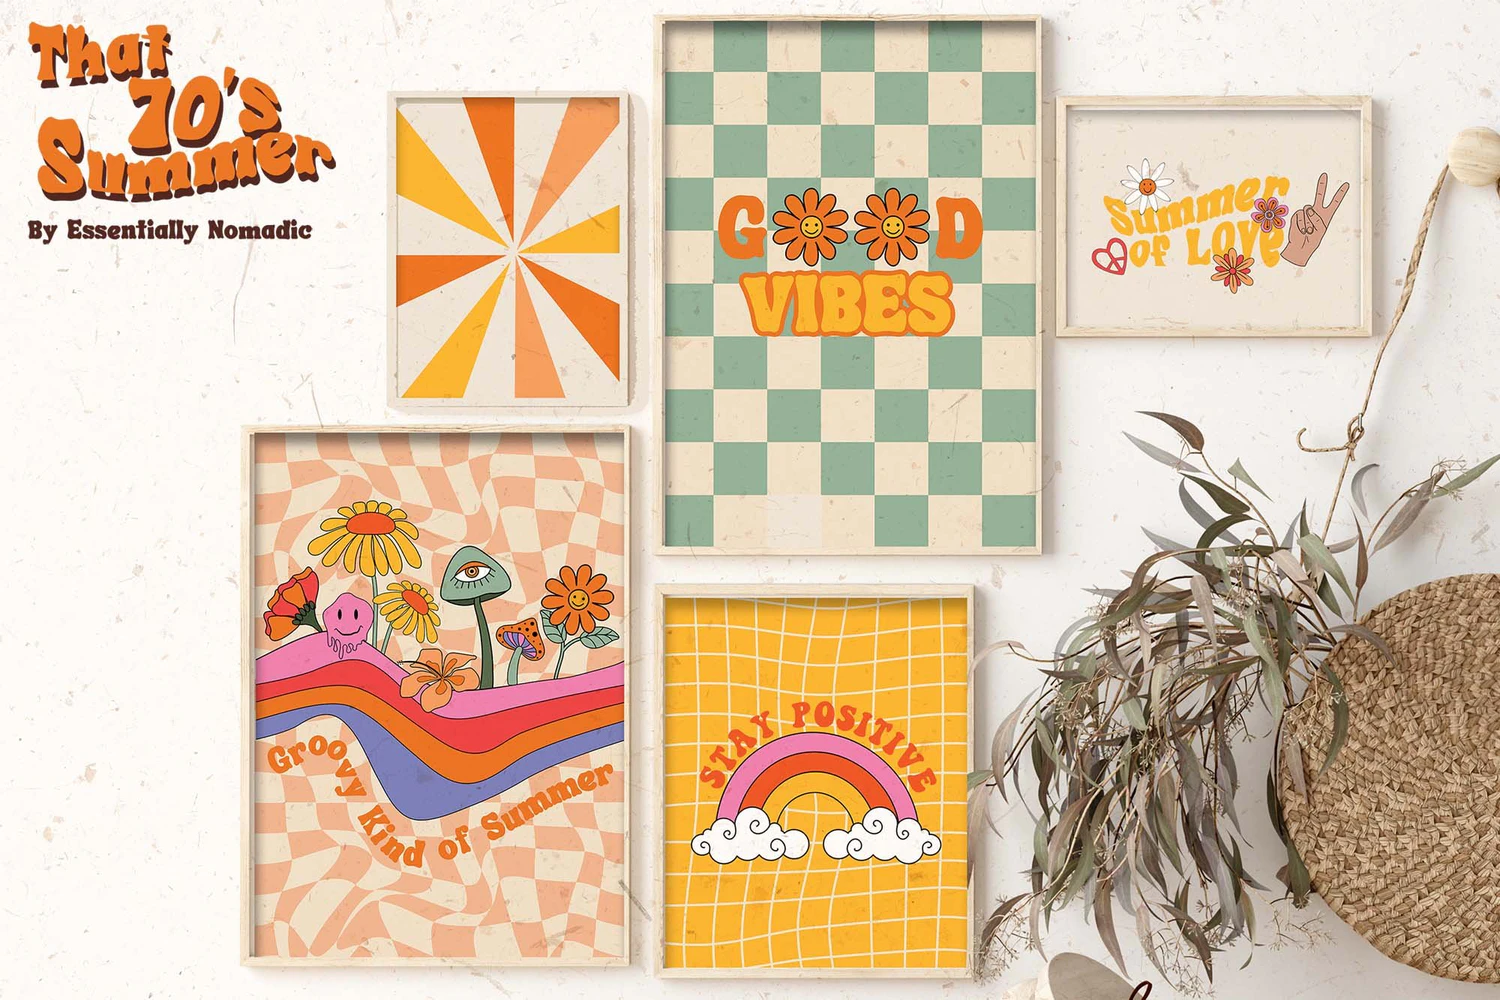 3334 70年代复古波西米亚风海滩元素植物花卉创意图形矢量设计素材 A Joyful Retro Graphic Collection